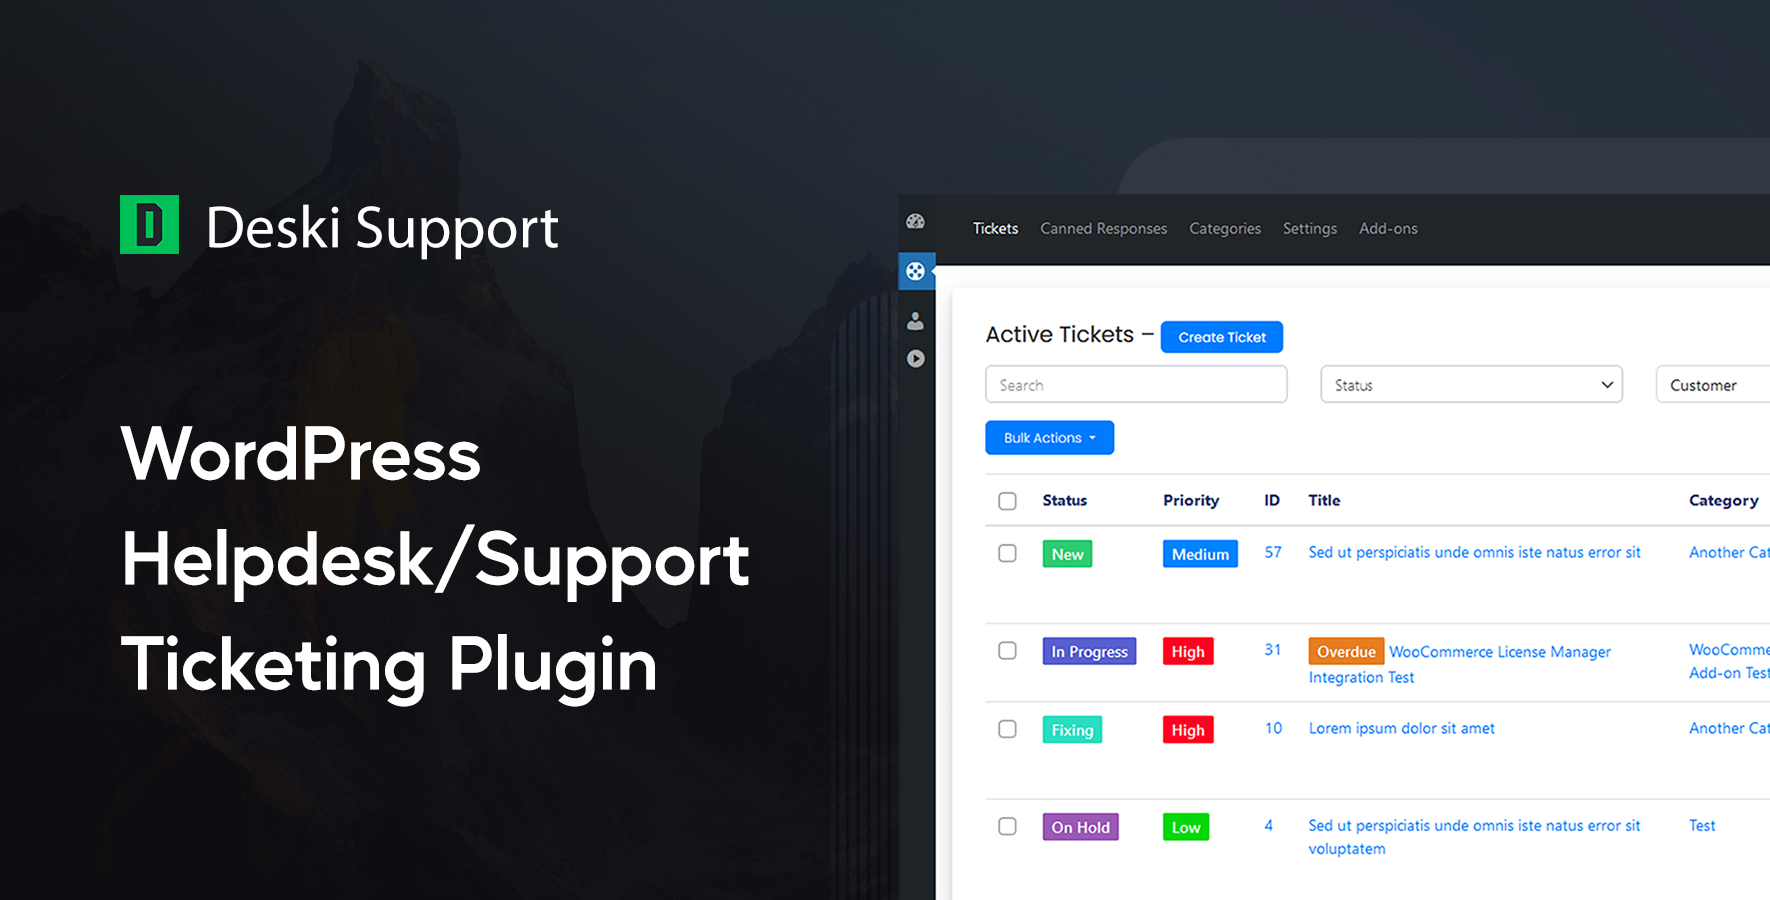 Deski Support - WordPress HelpDesk & Support Ticketing Plugin